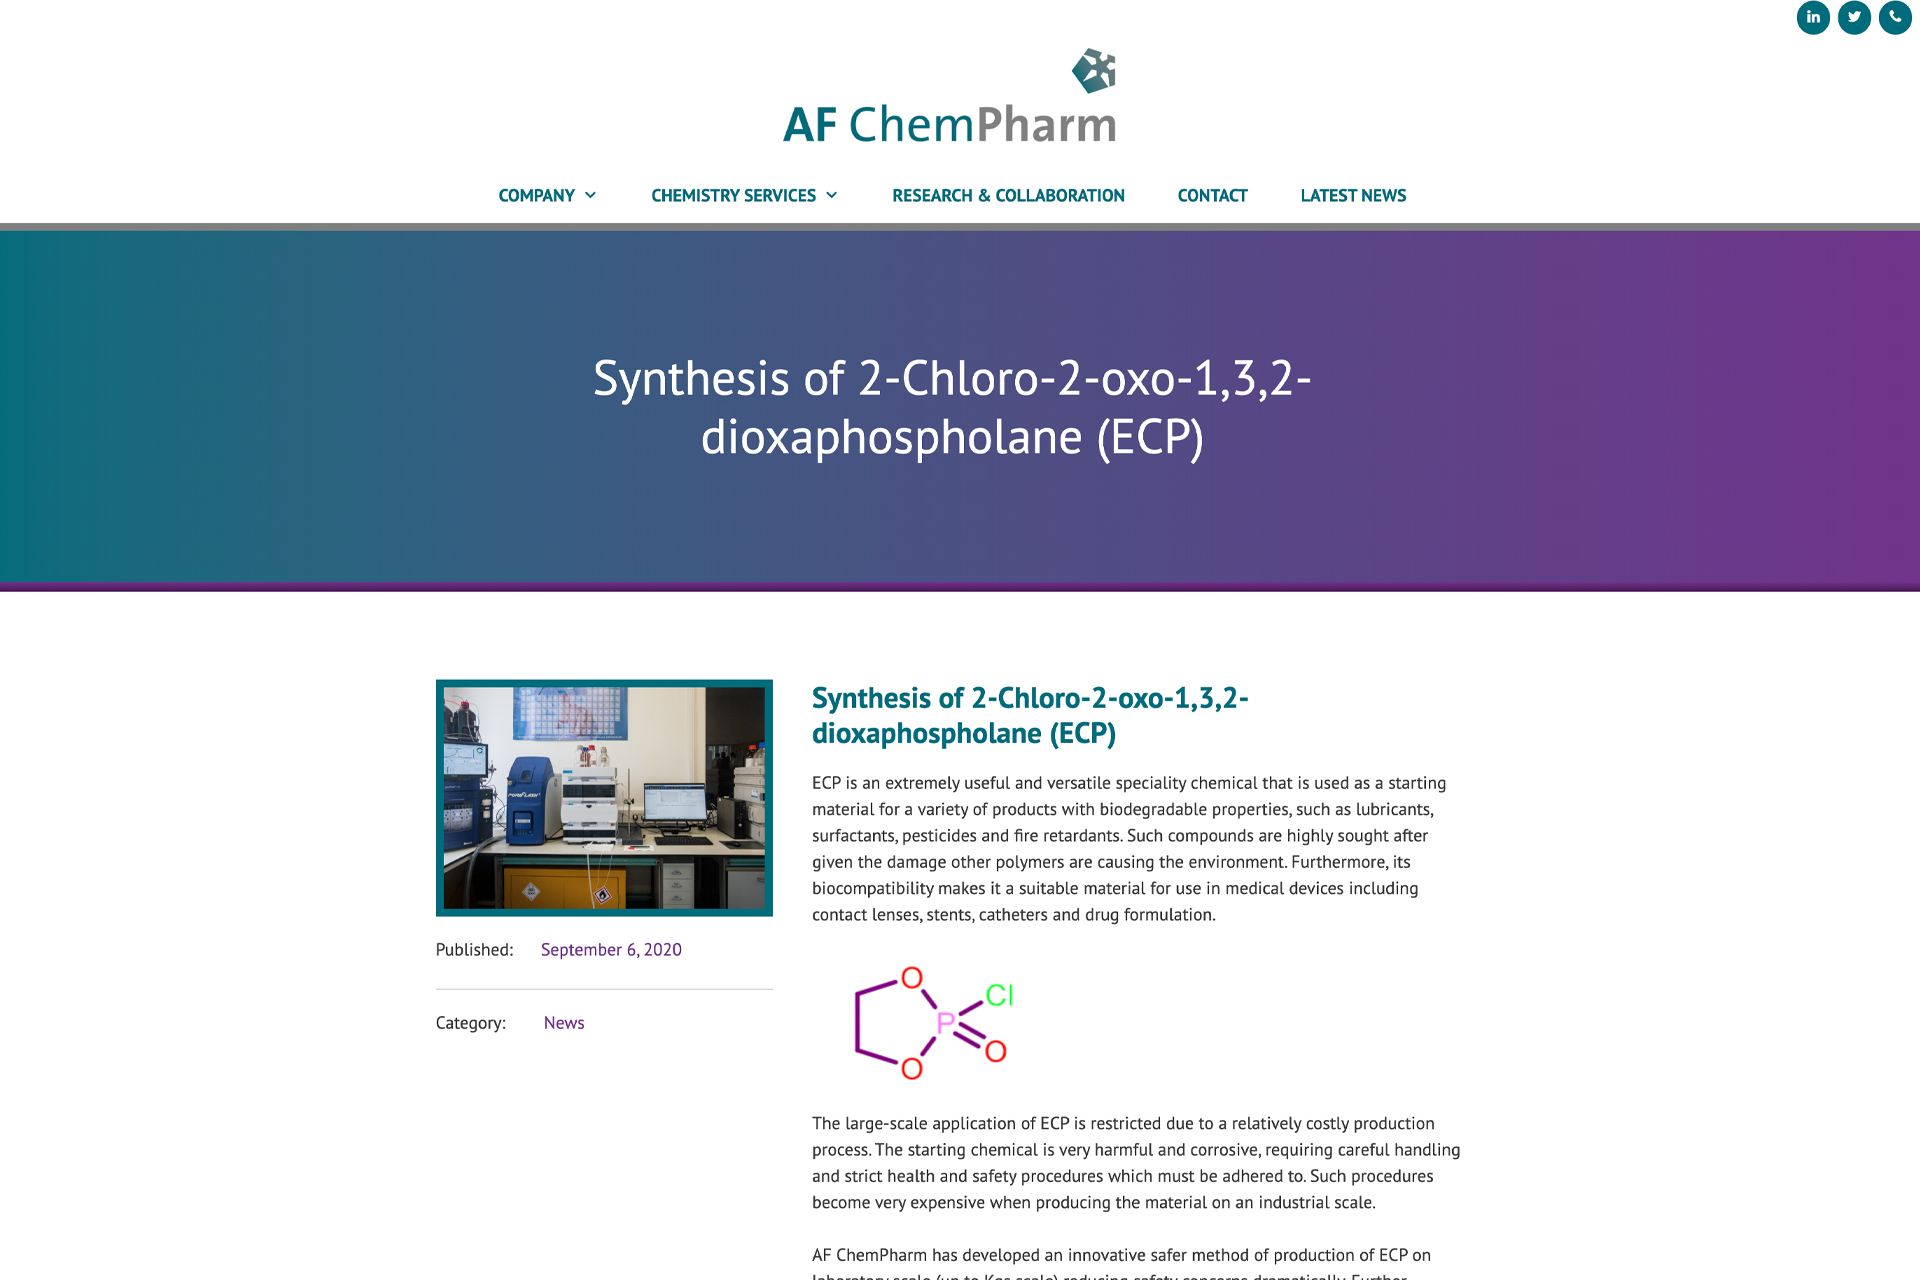 AF-ChemPharm-case-study-sml-image-2